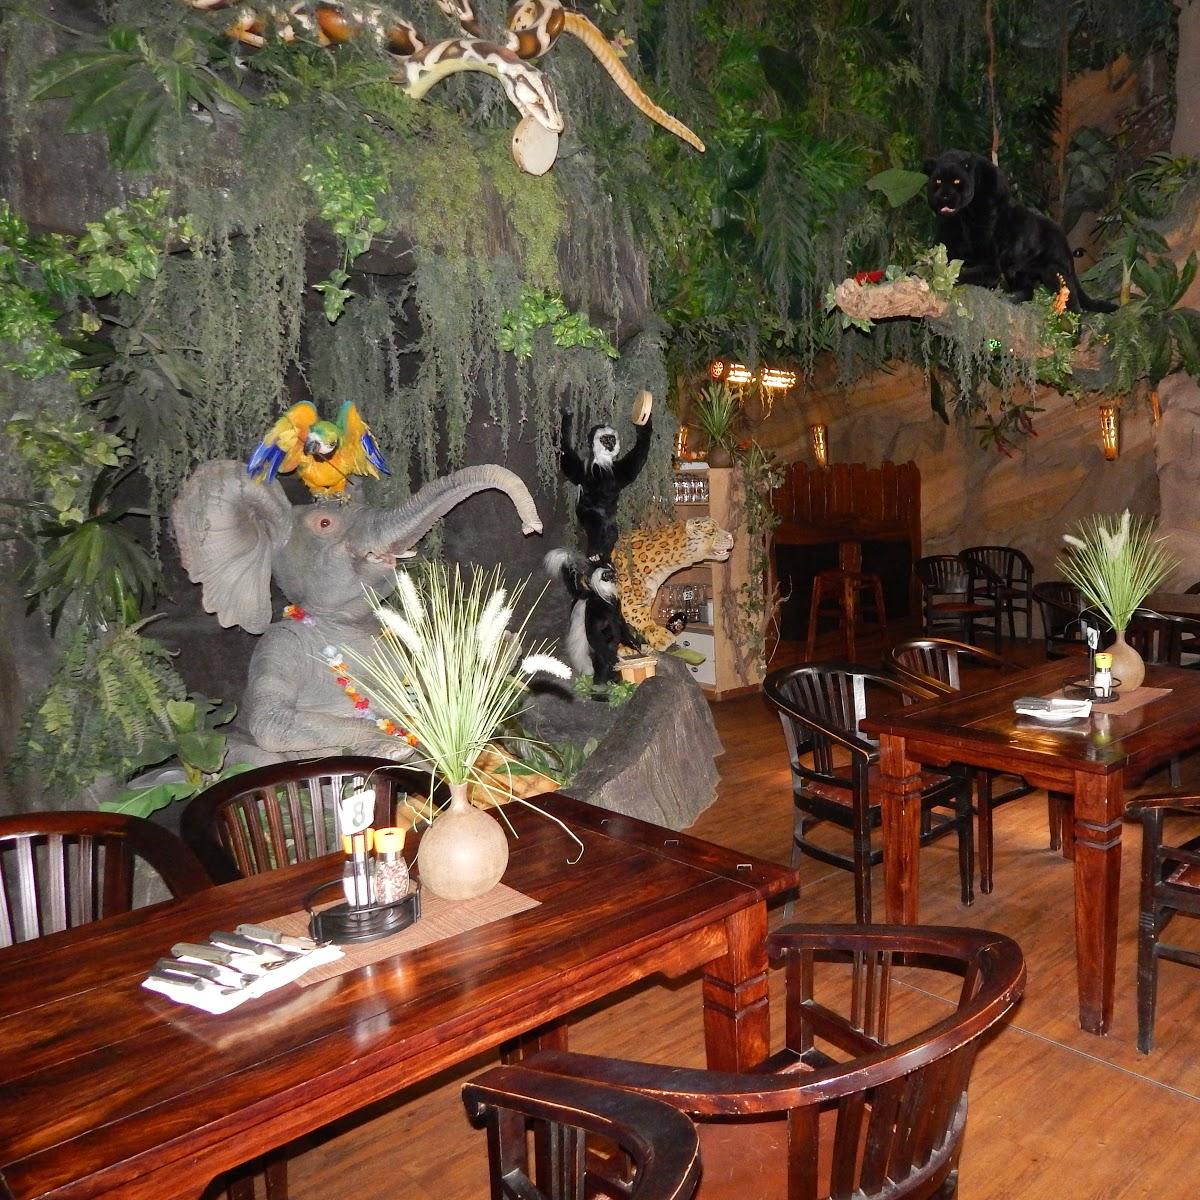 Restaurant "Dschungelrestaurant" in Wangels